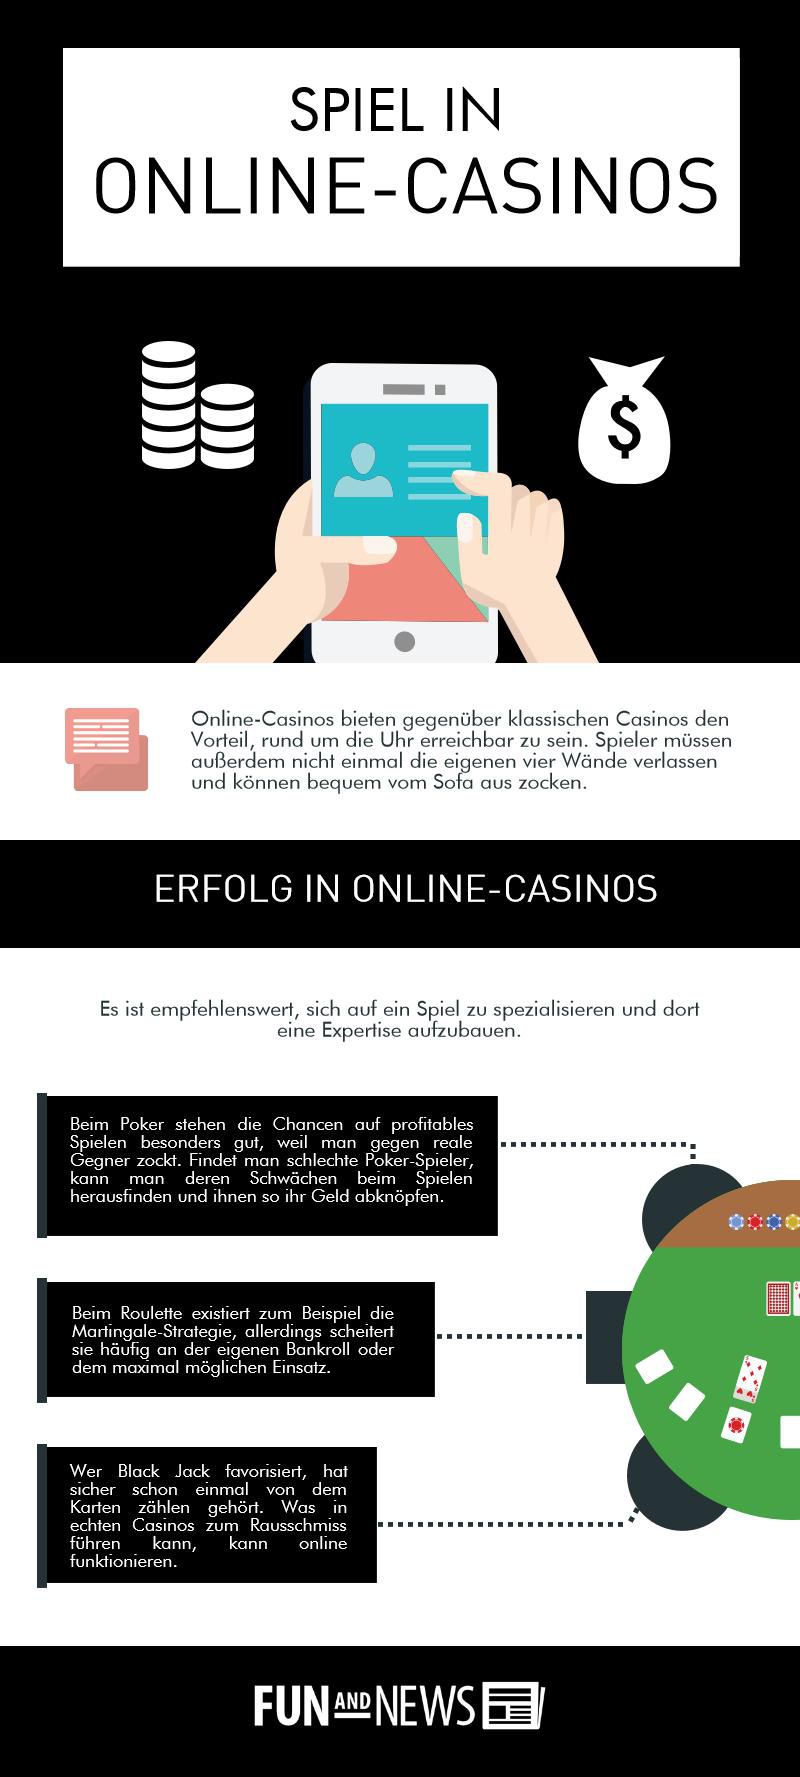 Was ist beim regelmäßigen Spielen in Online-Casinos zu beachten?